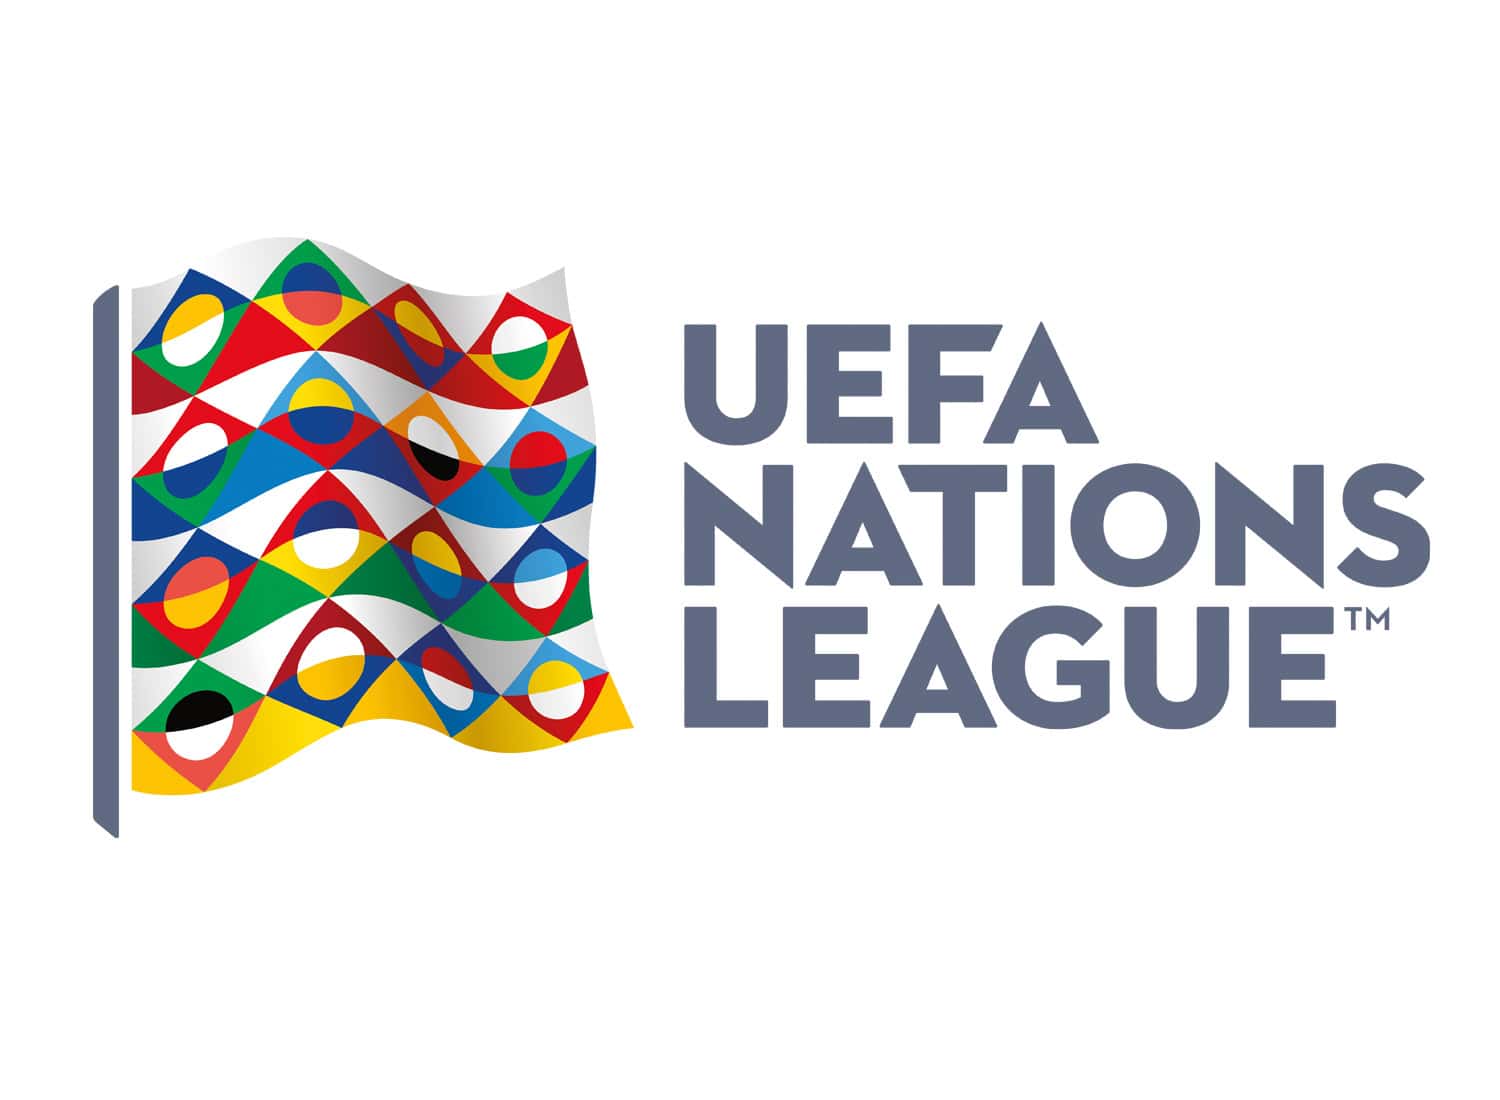 UEFA Nations League Lithuania vs Romania